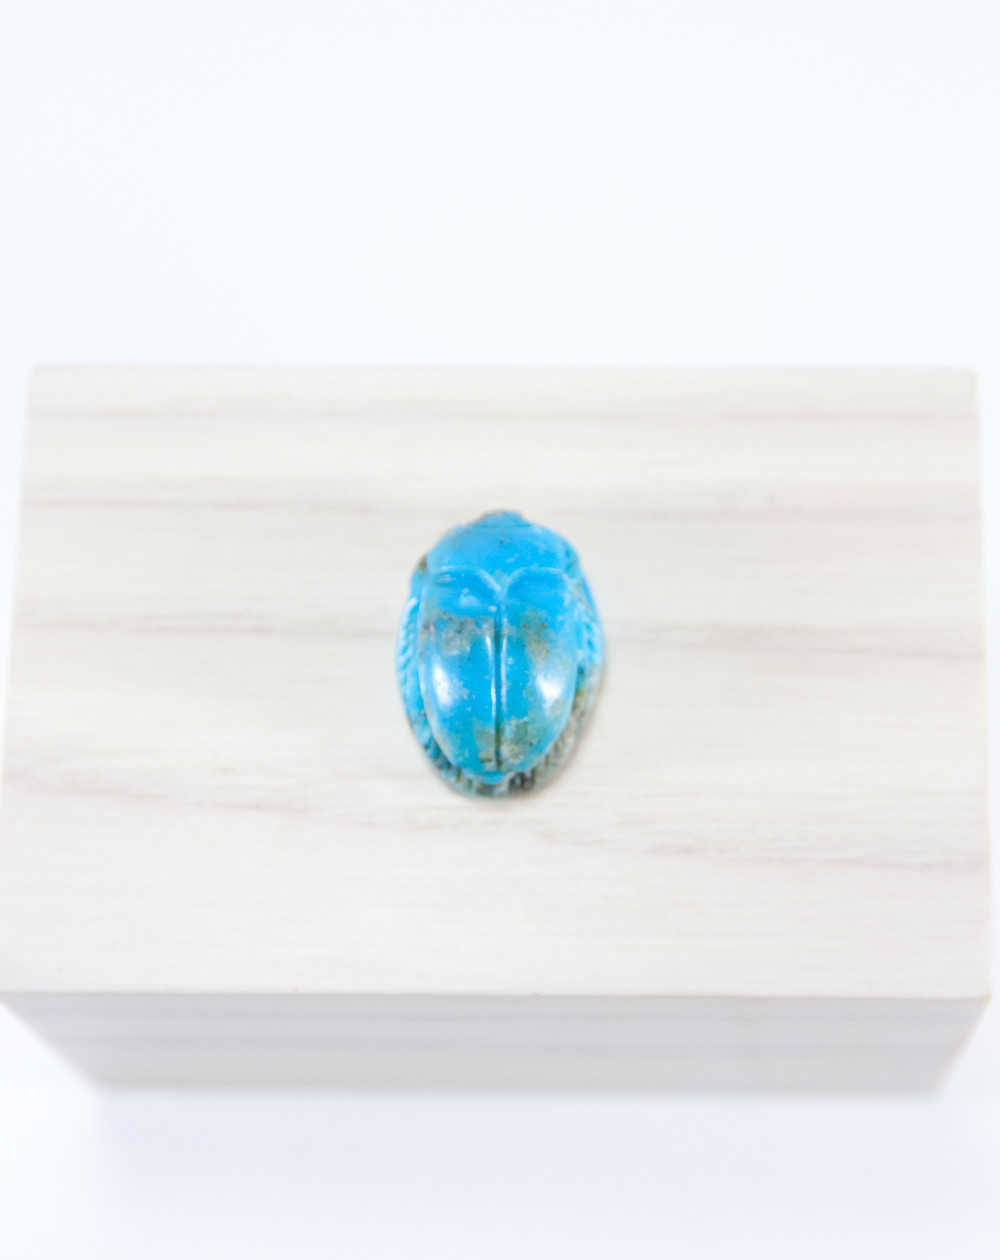 Pendentif Scarabée en Turquoise. Collection Khépri. Sanuk Création, Bayonne